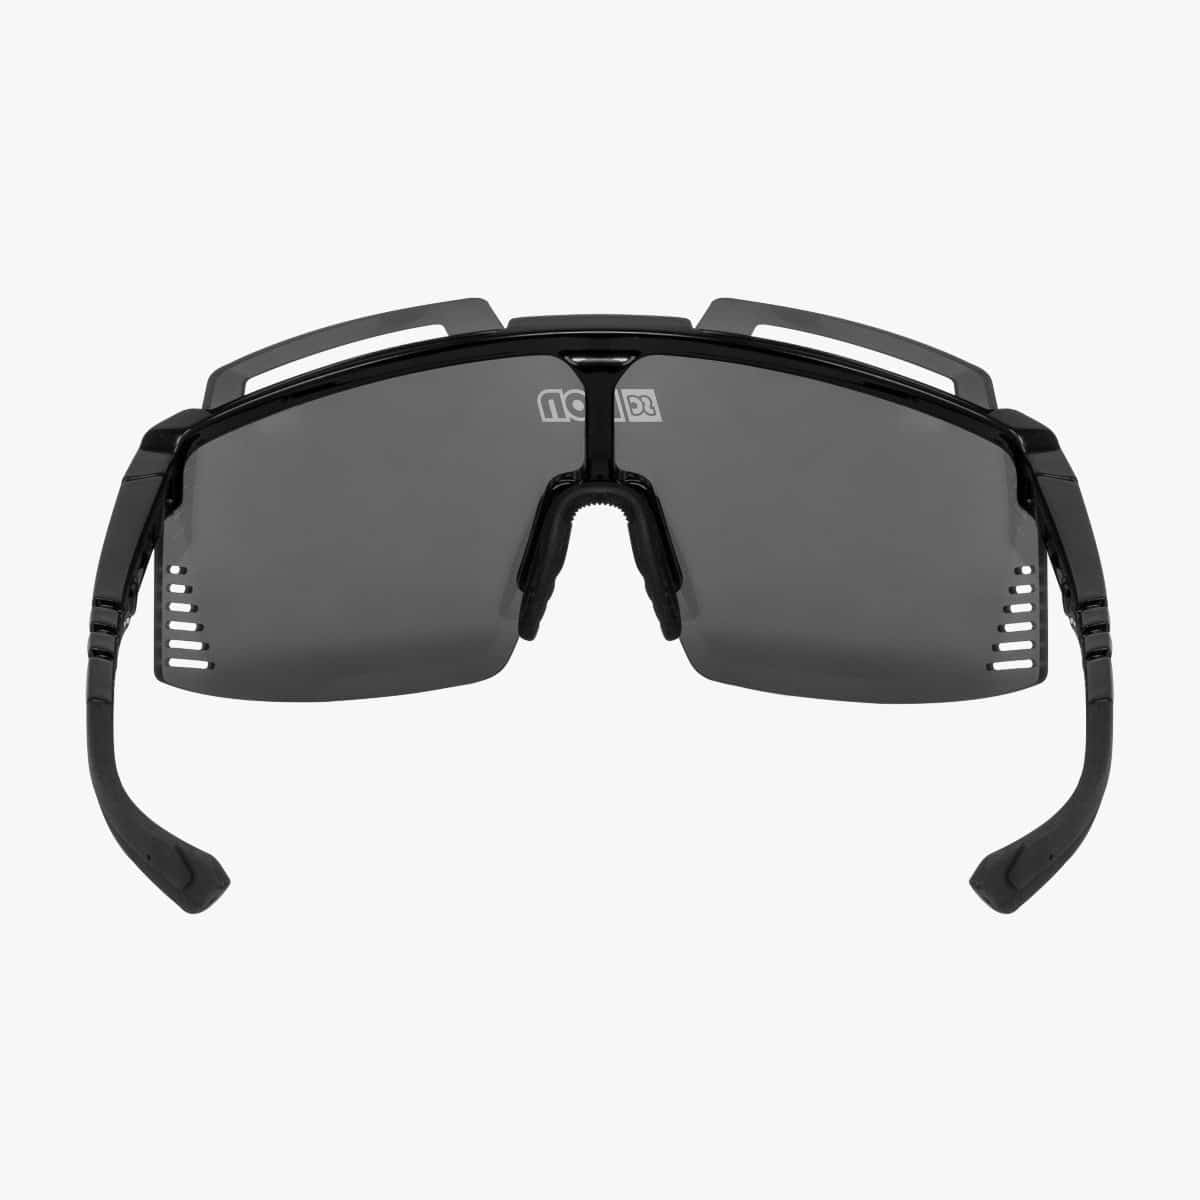 Scicon Aerowatt Foza Sunglasses Black multimirror silver viewport